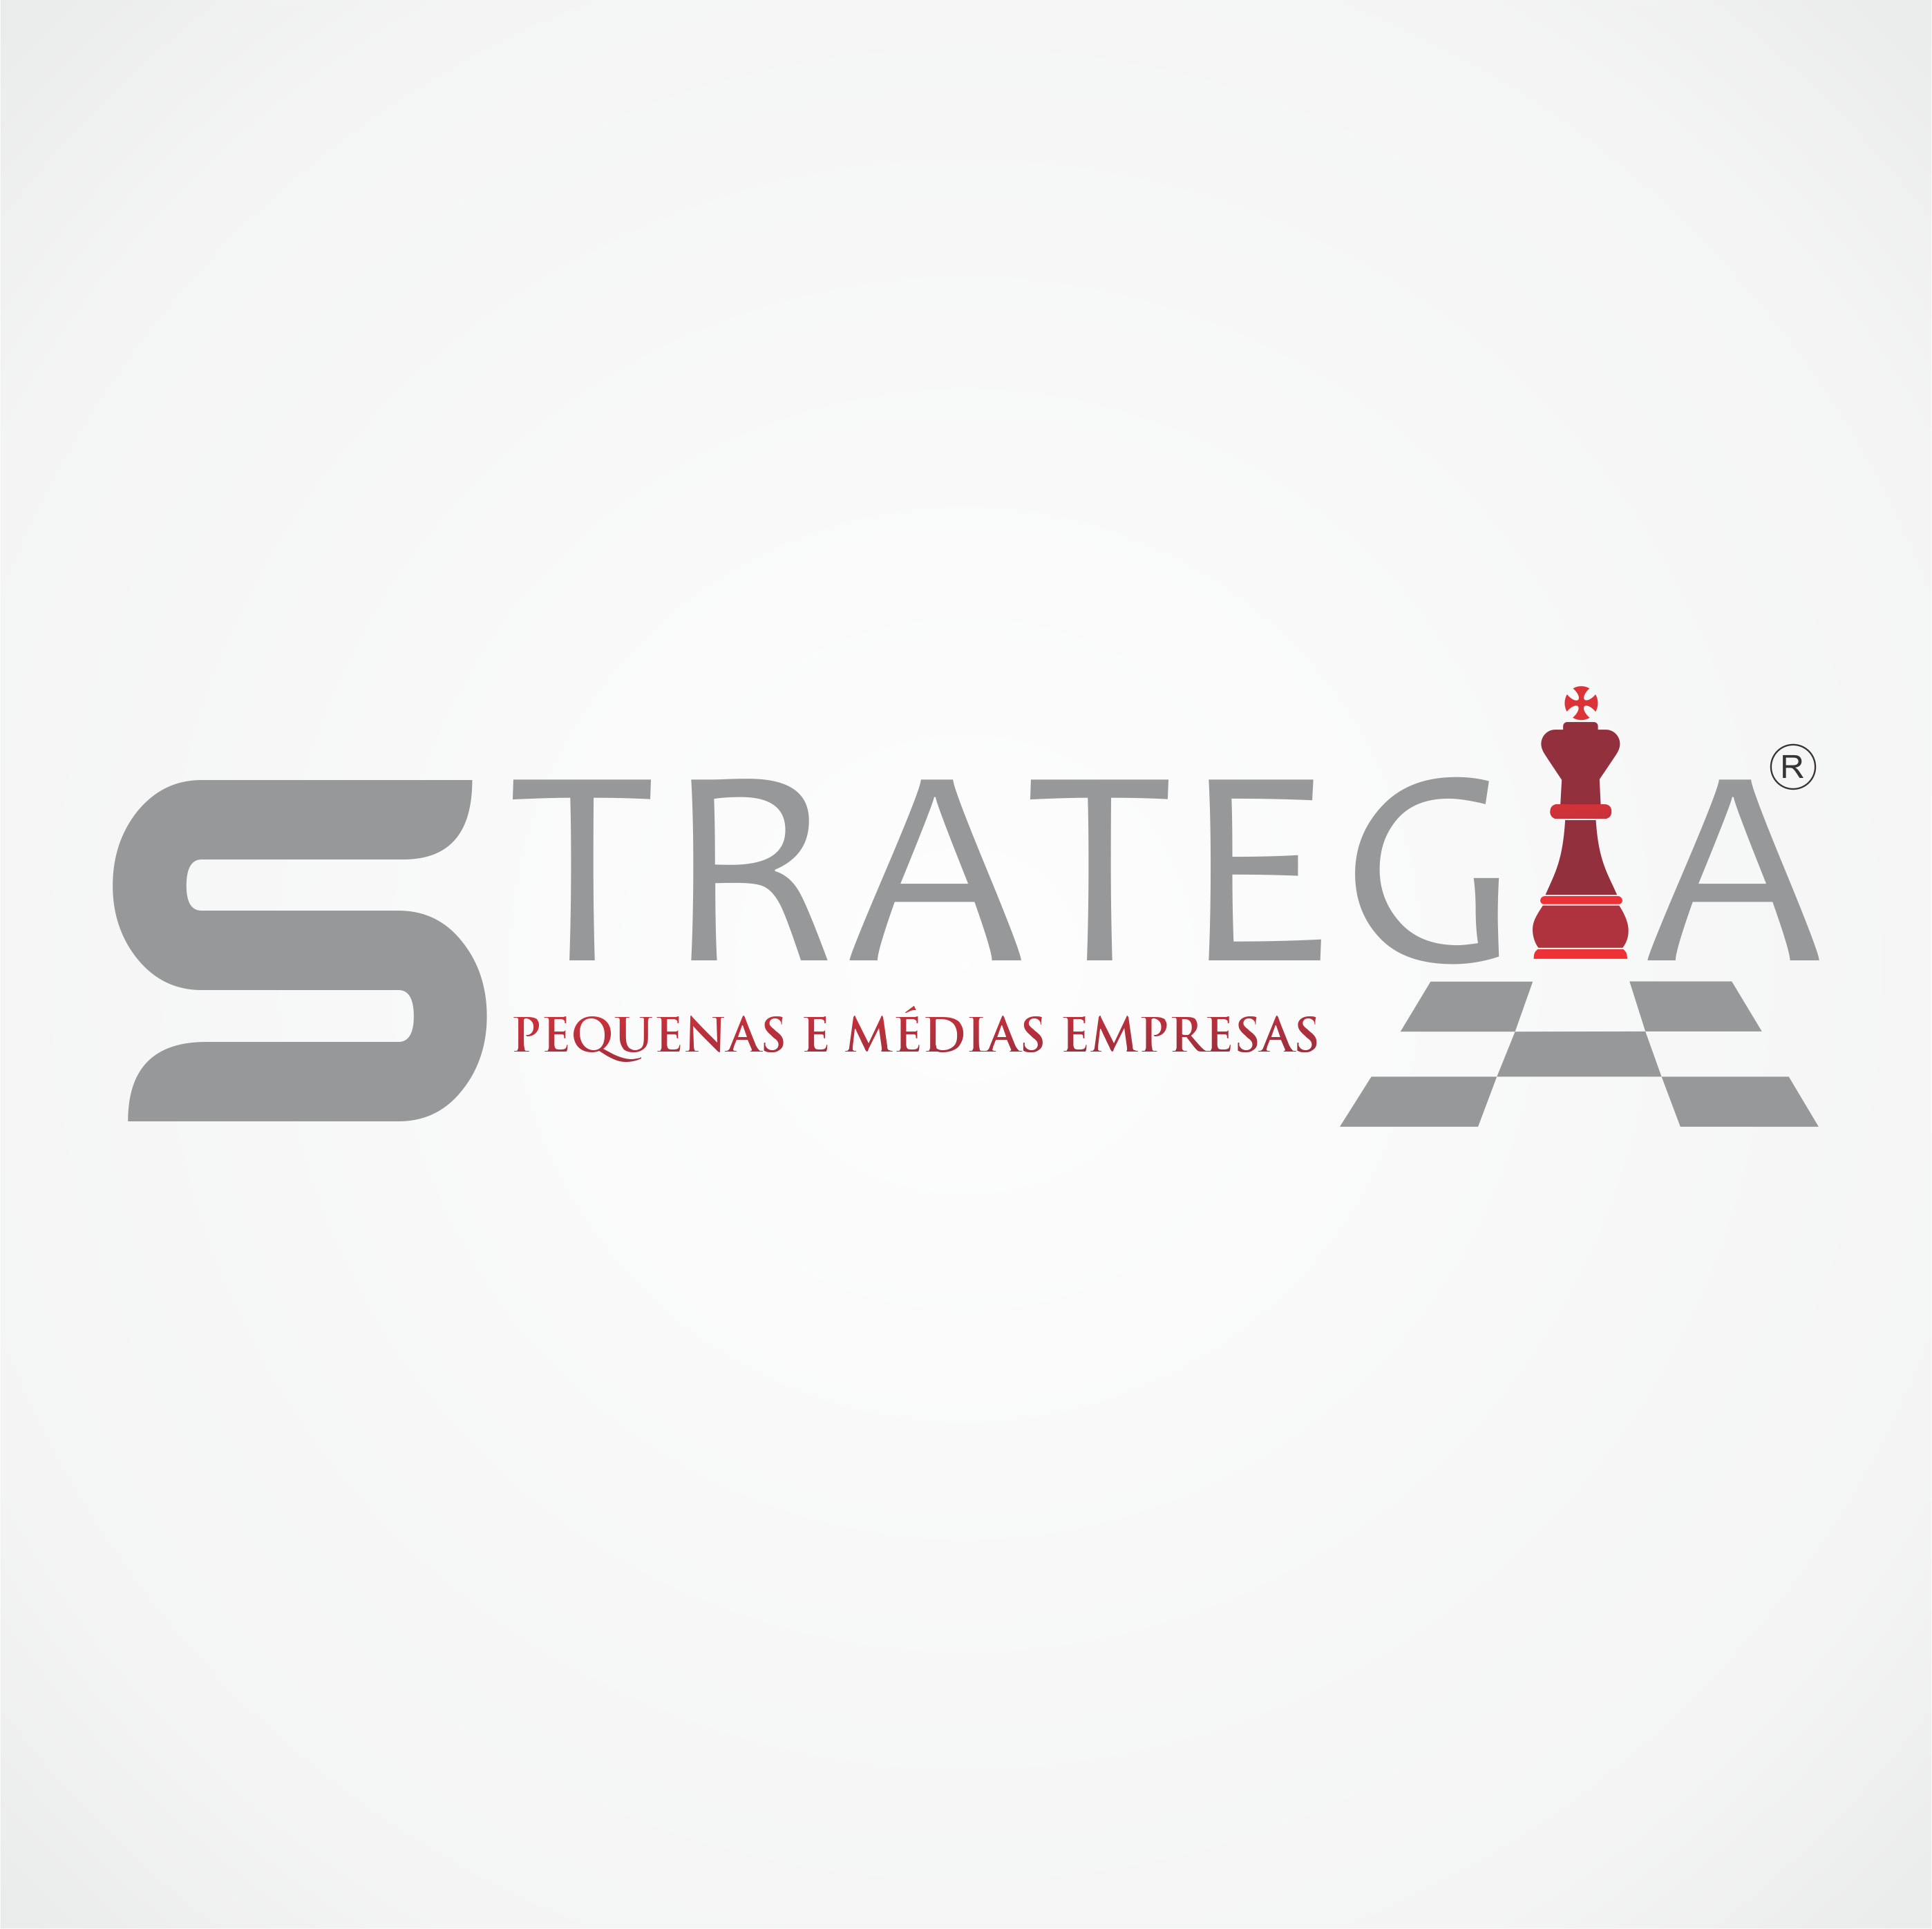 Página oficial da Strategia Pequenas e Médias empresas, um produto do Grupo Strategia. Serviços e treinamentos empresariais com padrão de excelência.